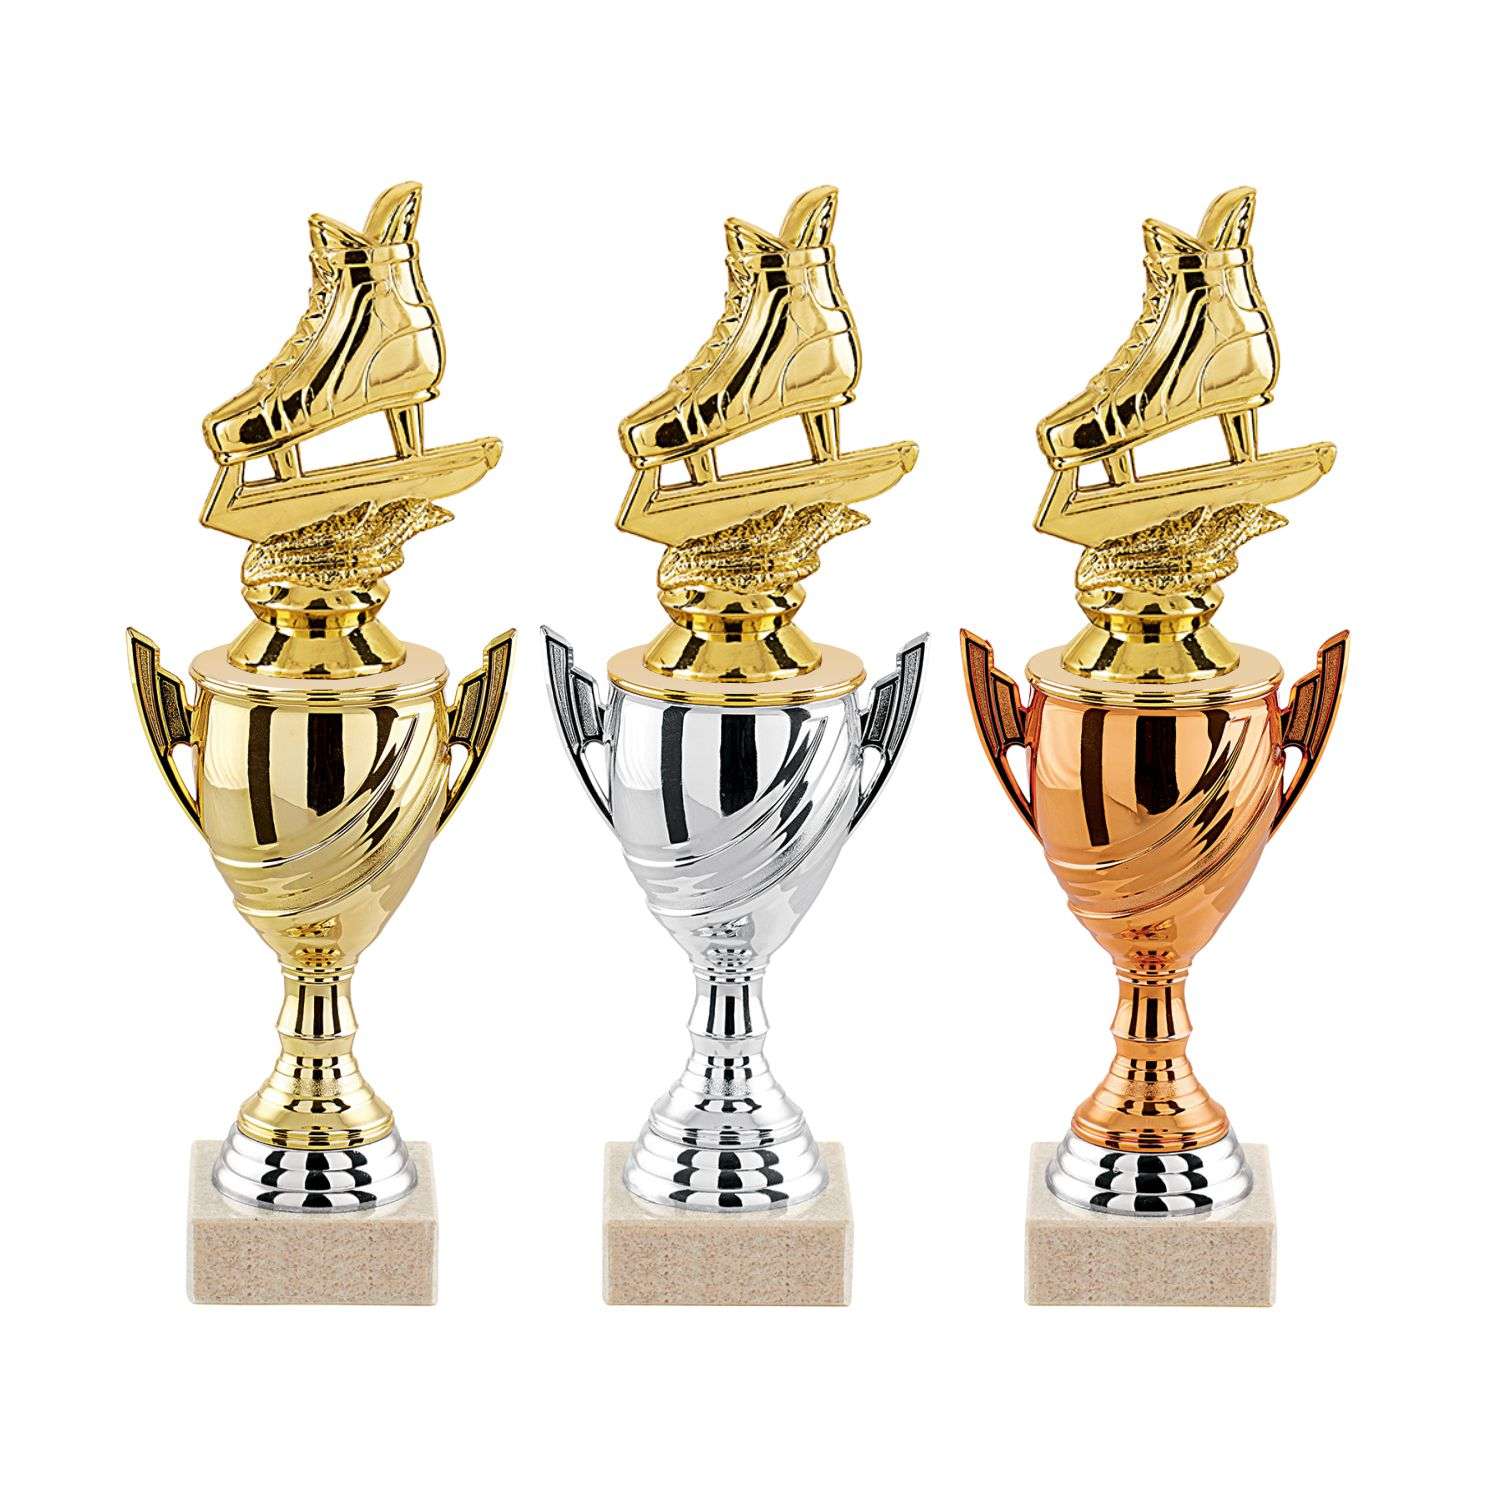 ATC fabrique 9 trophées gonflables de la Coupe du Monde FIFA au